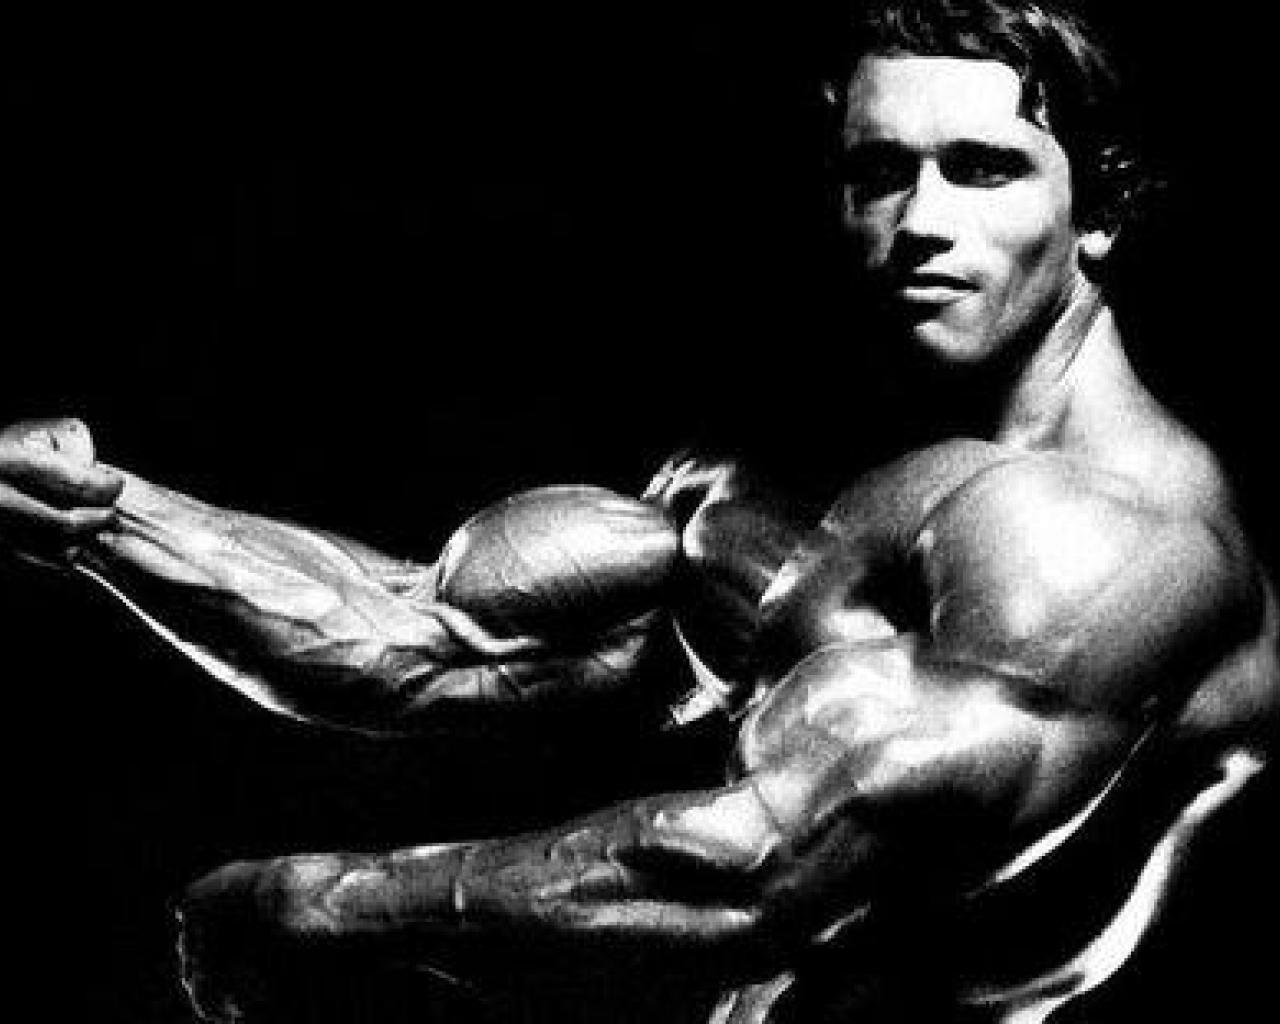 Arnold Bodybuilder Wallpaper. Piccry.com: Picture Idea Gallery